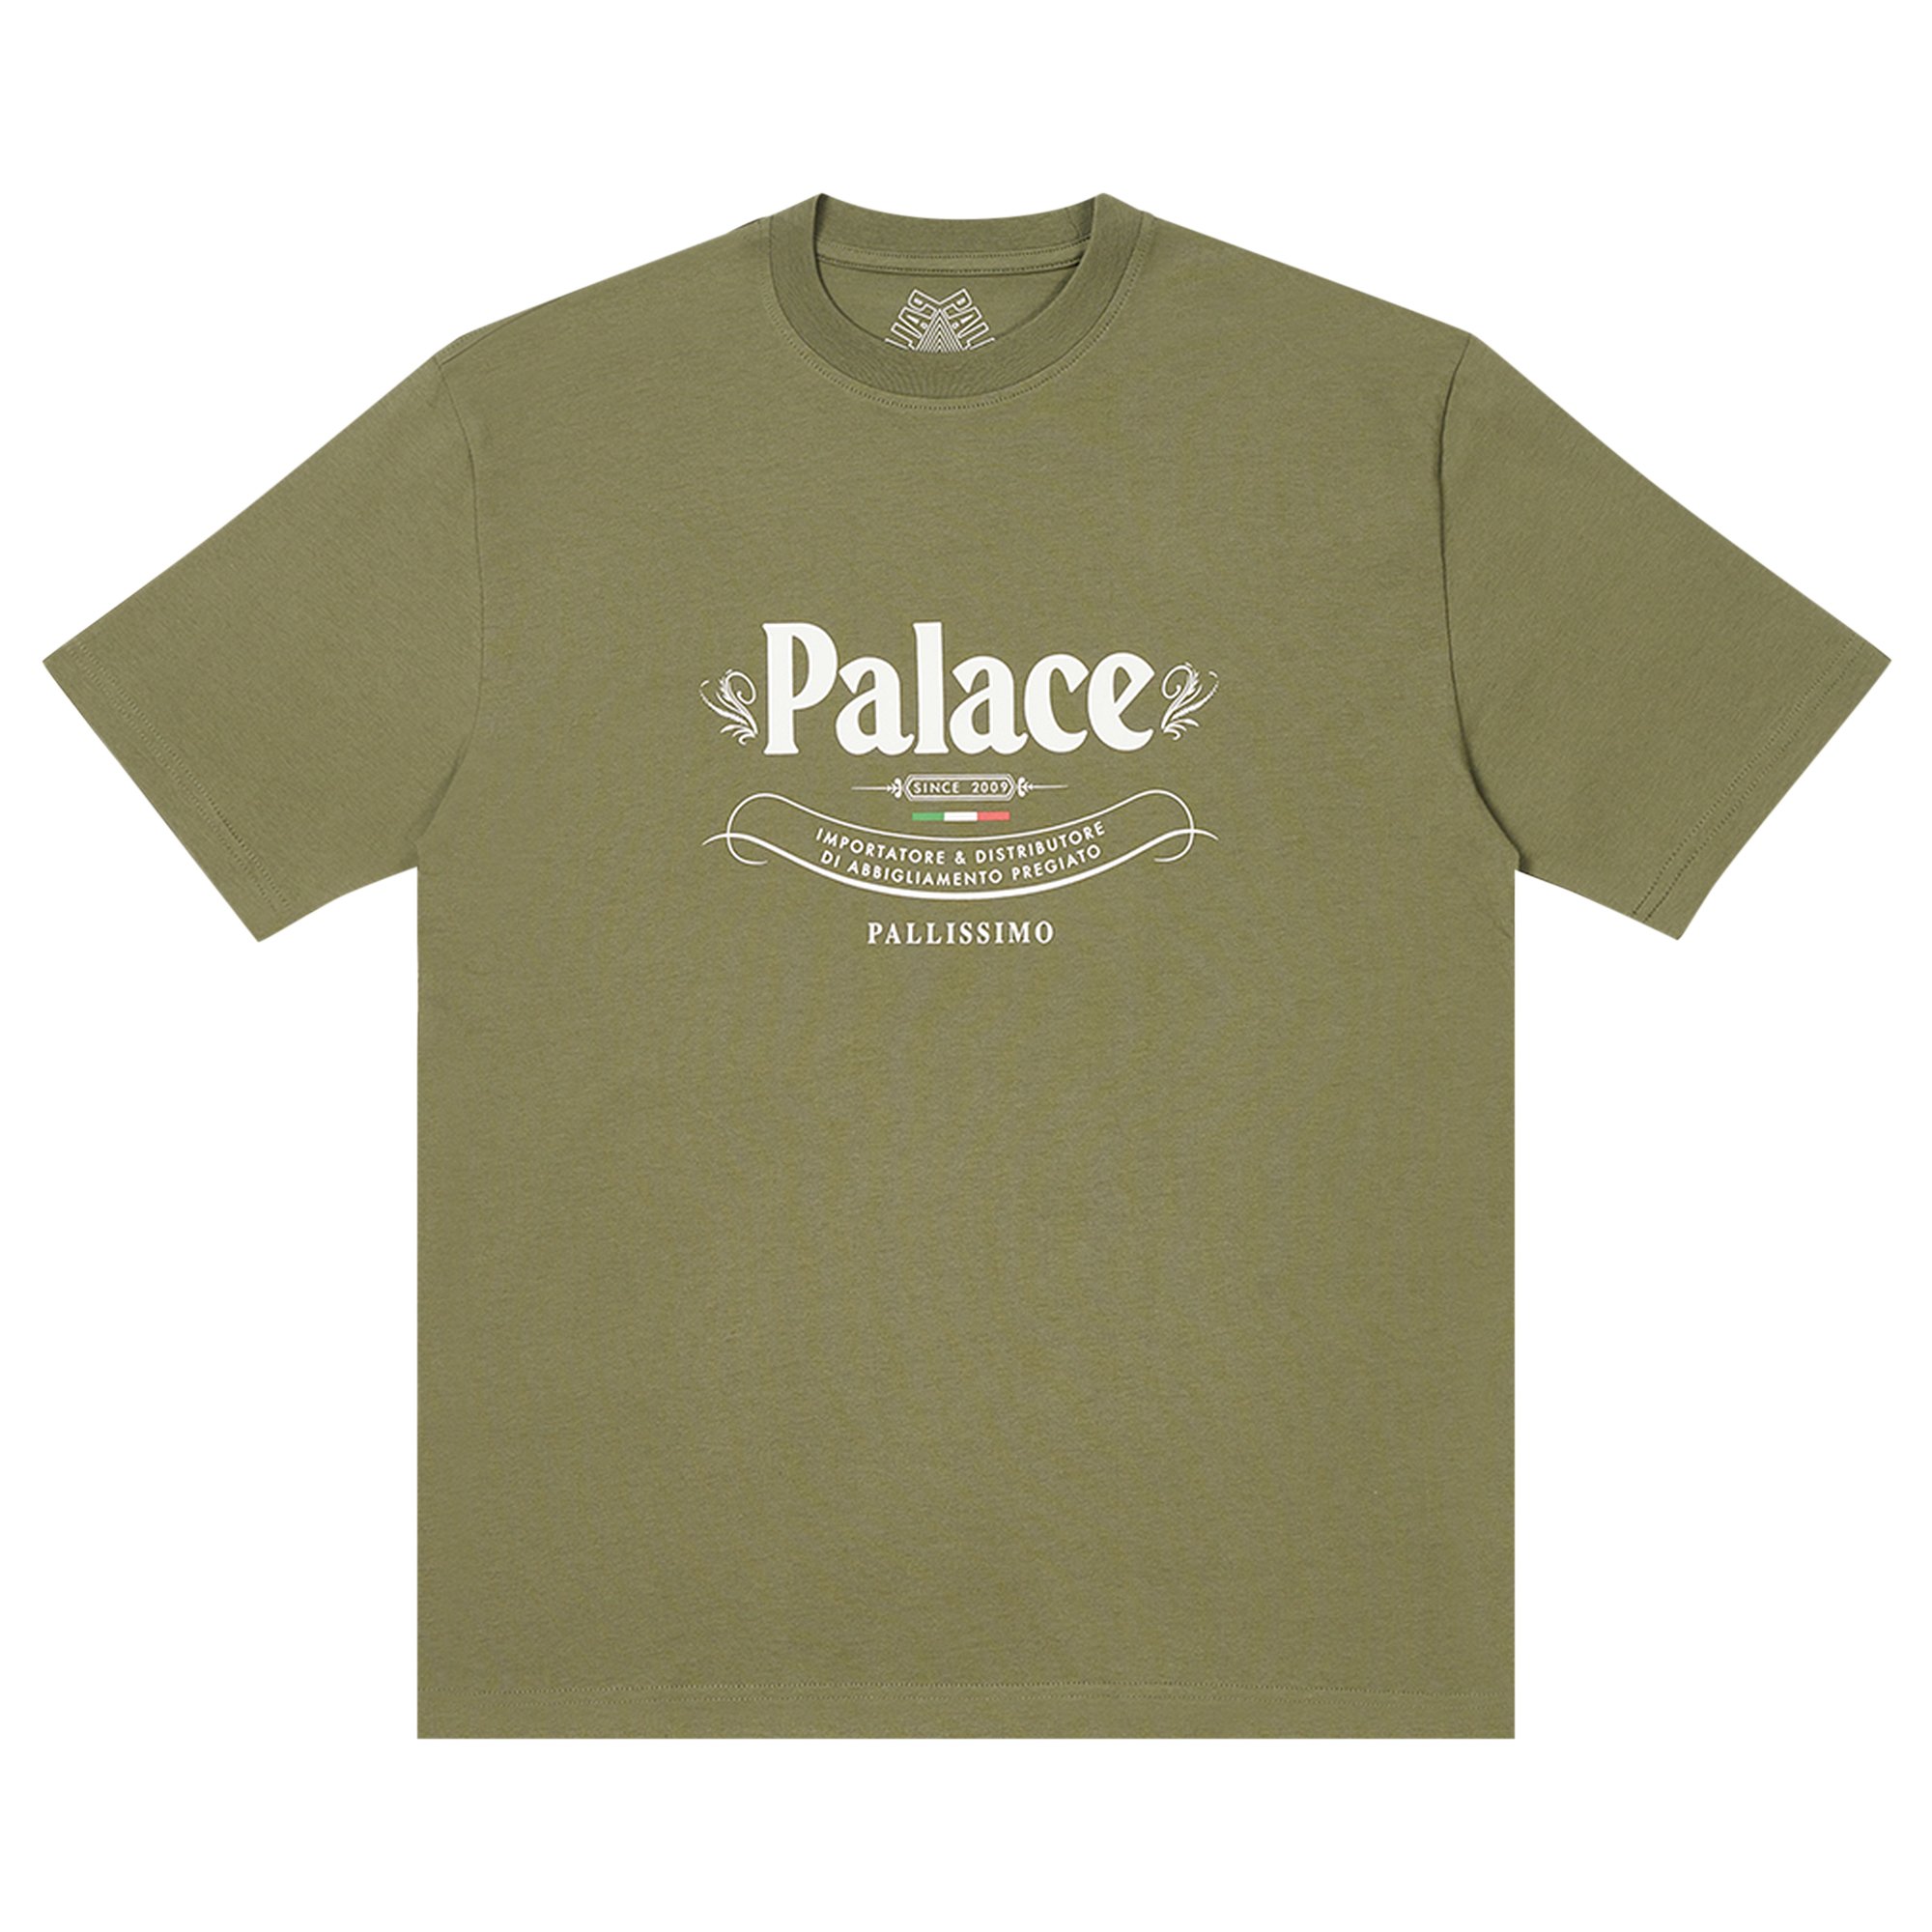 Palace Pallissimo T-shirt White